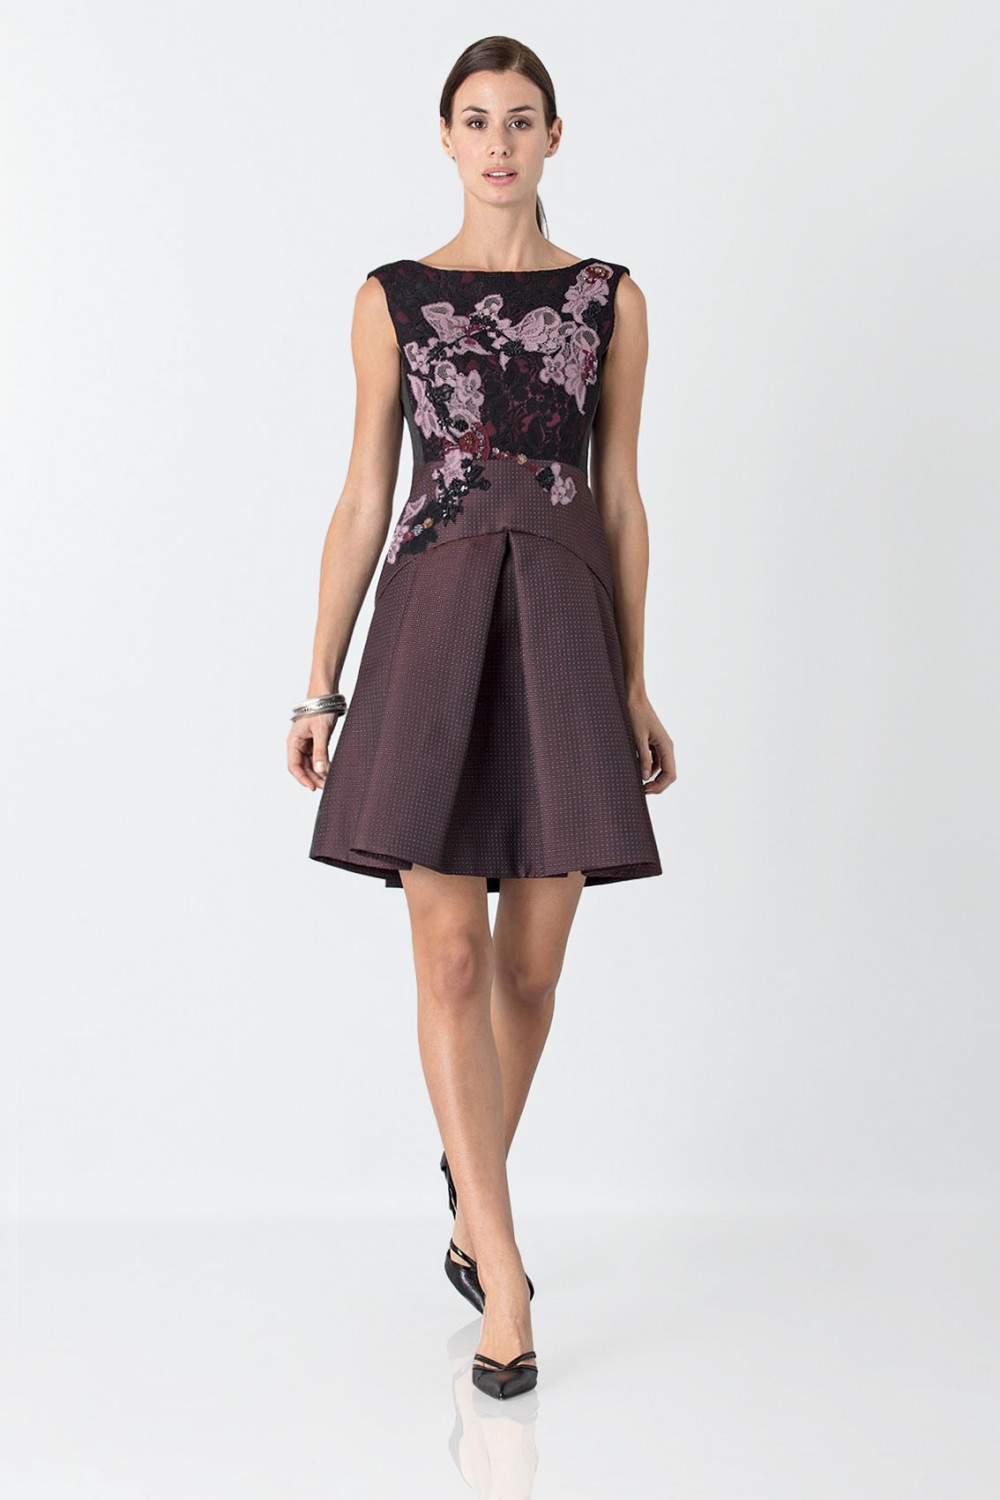 Vendita Abbigliamento Usato FIrmato - Mini abito con ricamo floreale - Antonio Marras - Drexcode -5